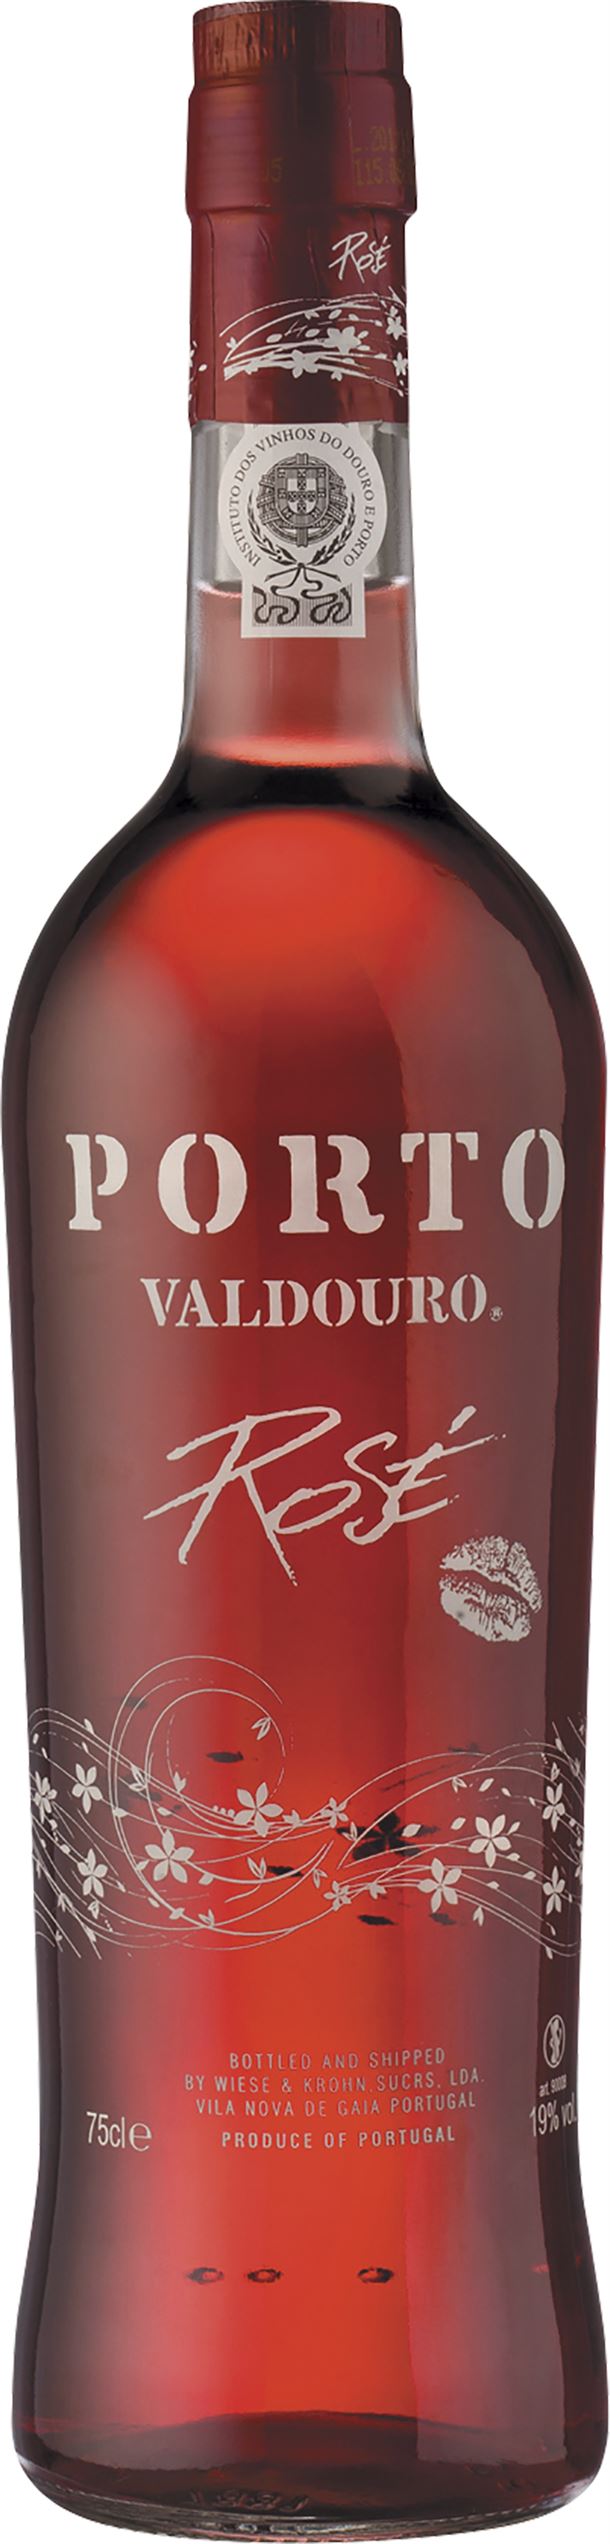 PORTO VALDOURO ROSÉ PORT